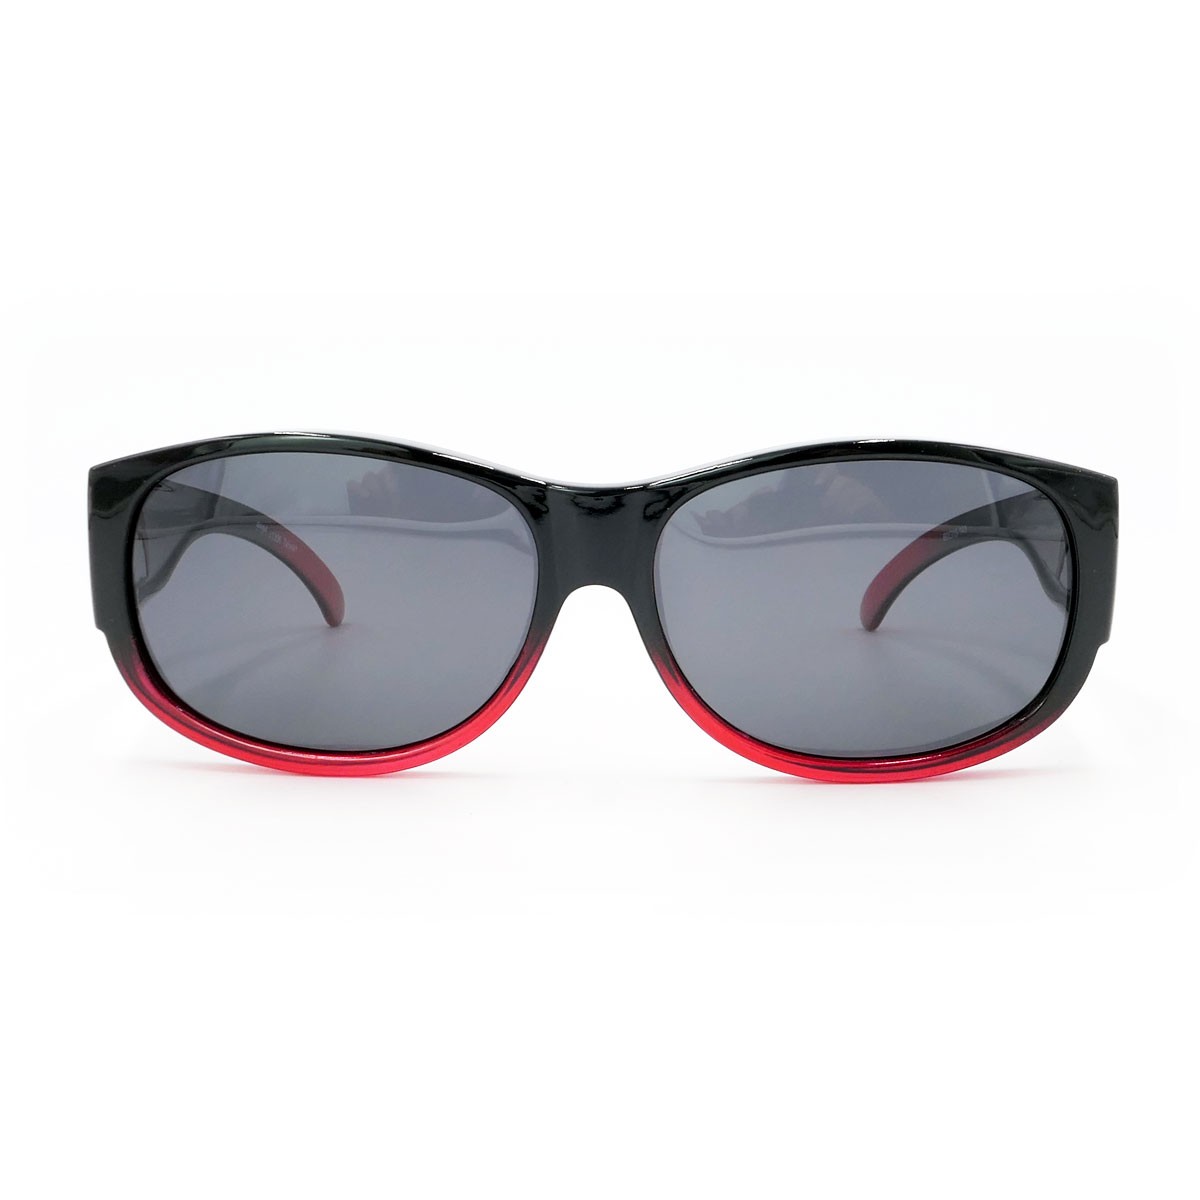 客製化墨鏡,套鏡式太陽眼鏡,可搭配近視眼鏡